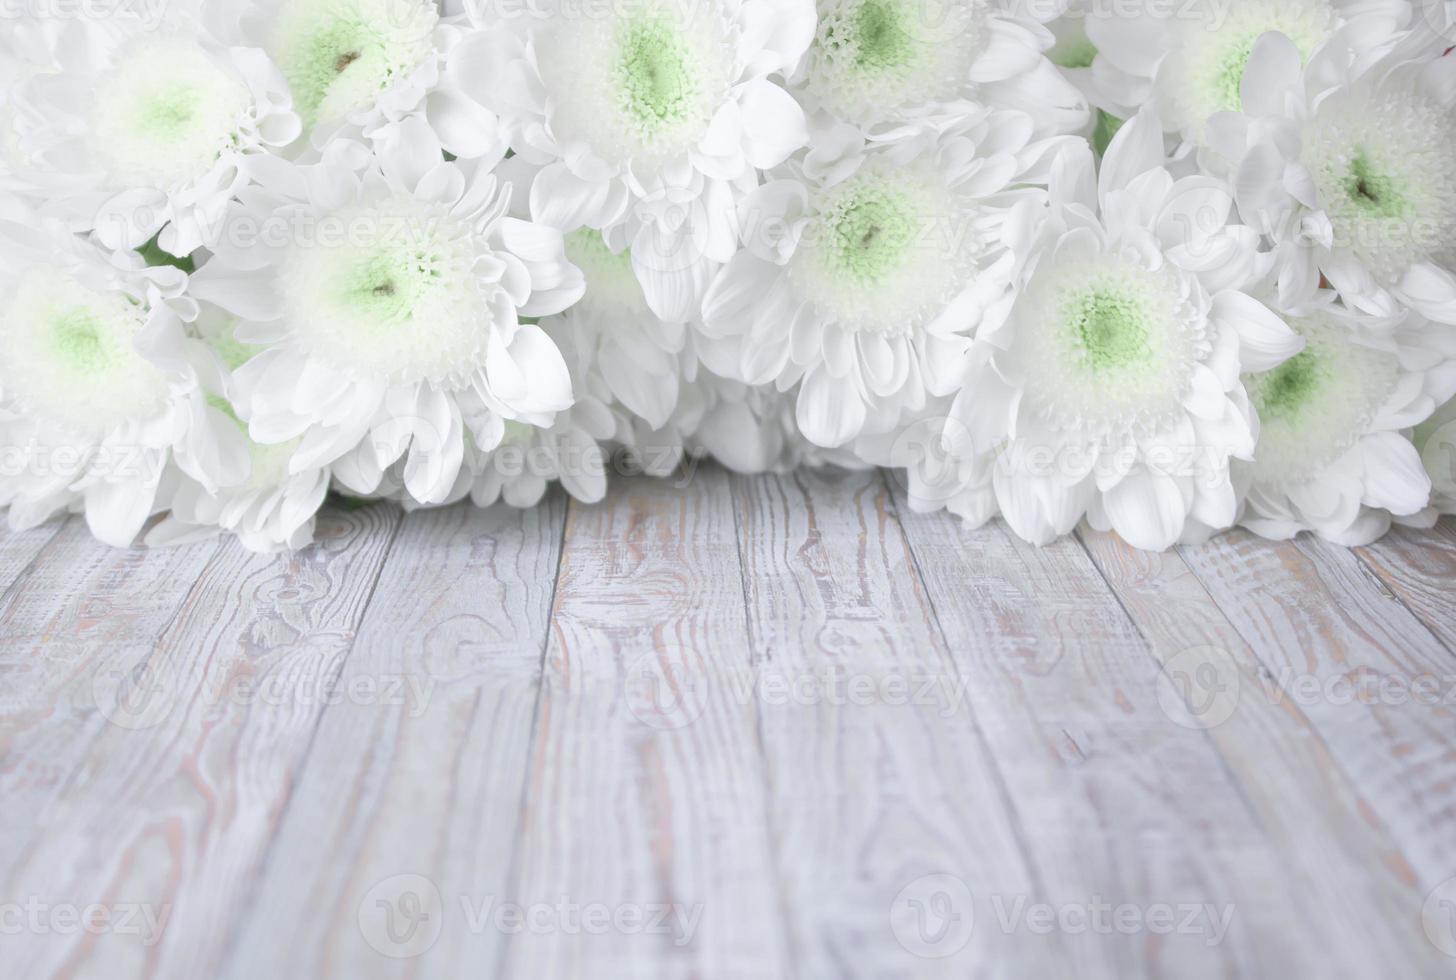 bloemen van delicate witte chrysanten op een witte houten ondergrond foto